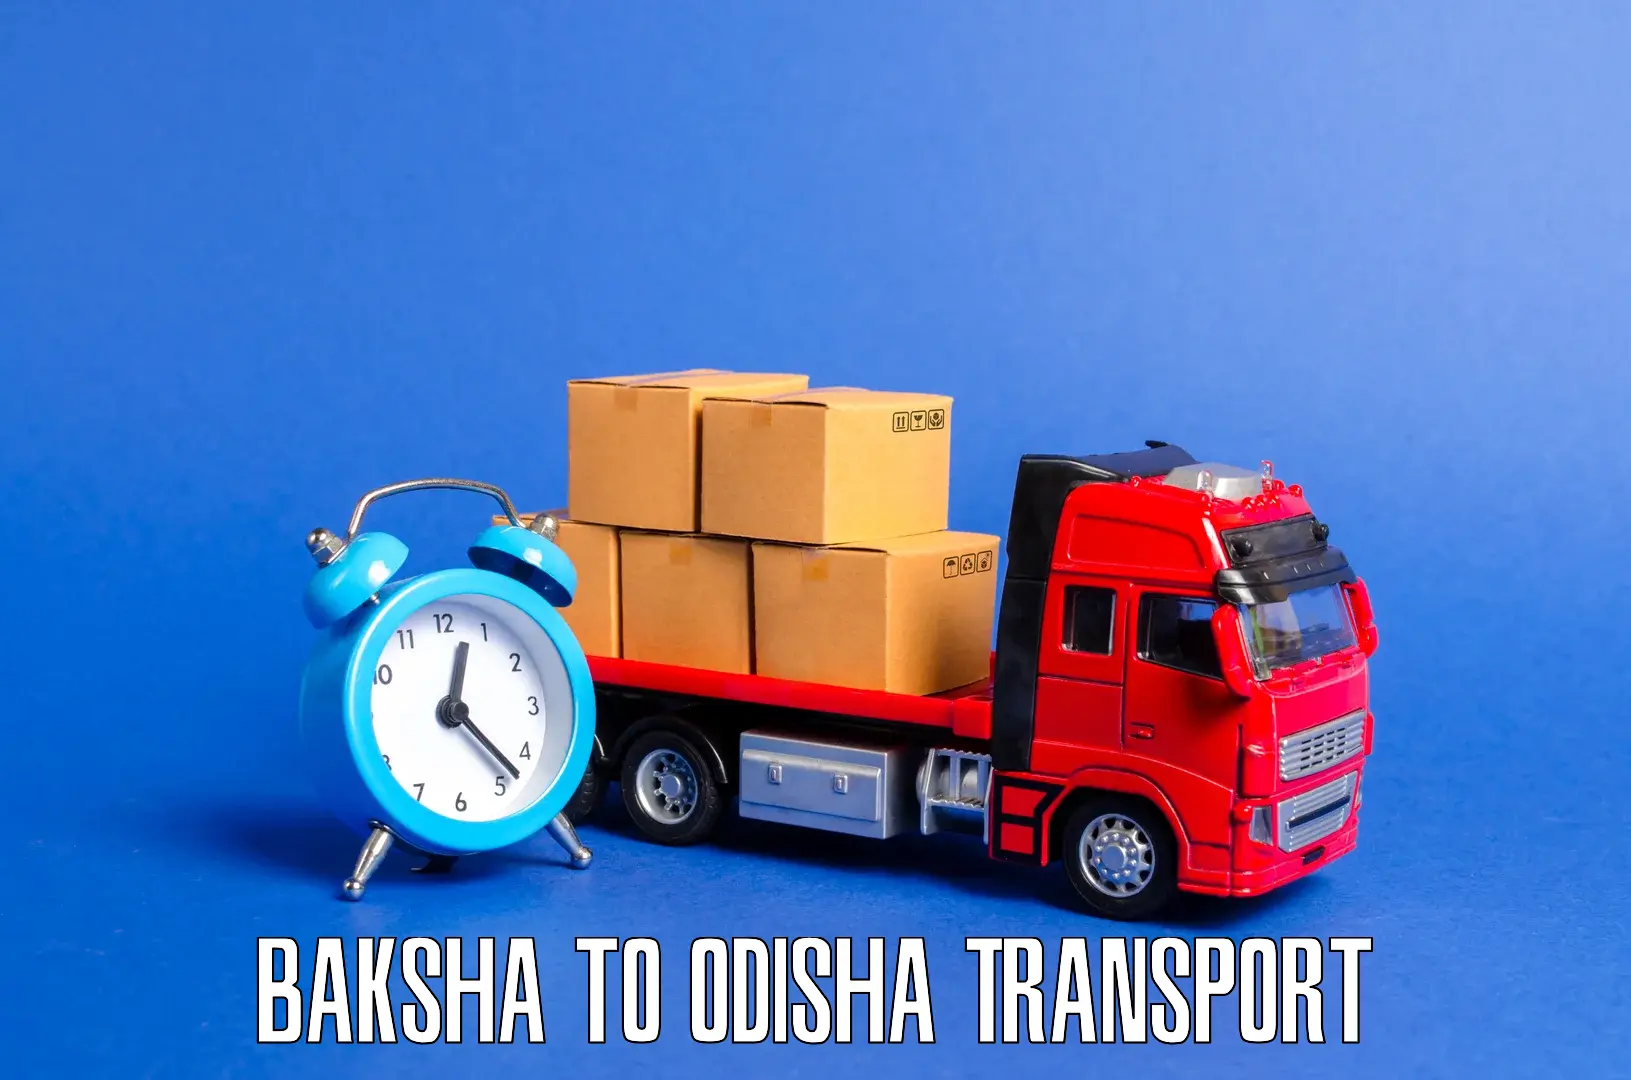 Road transport services Baksha to Kosagumuda